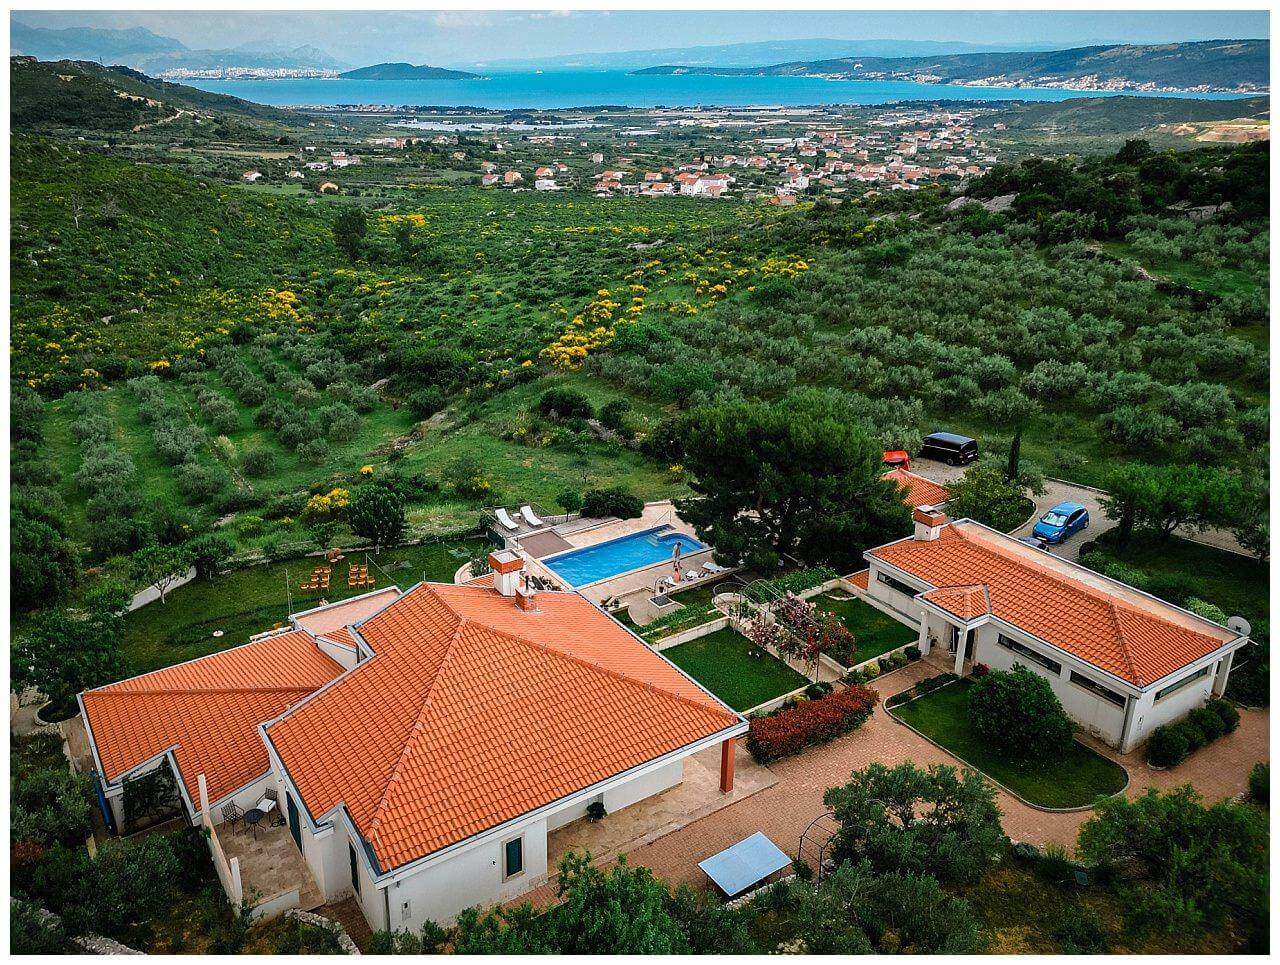 Private Villa in der Natur mit Pool bei einer Hochzeit in Istrien Kroatien